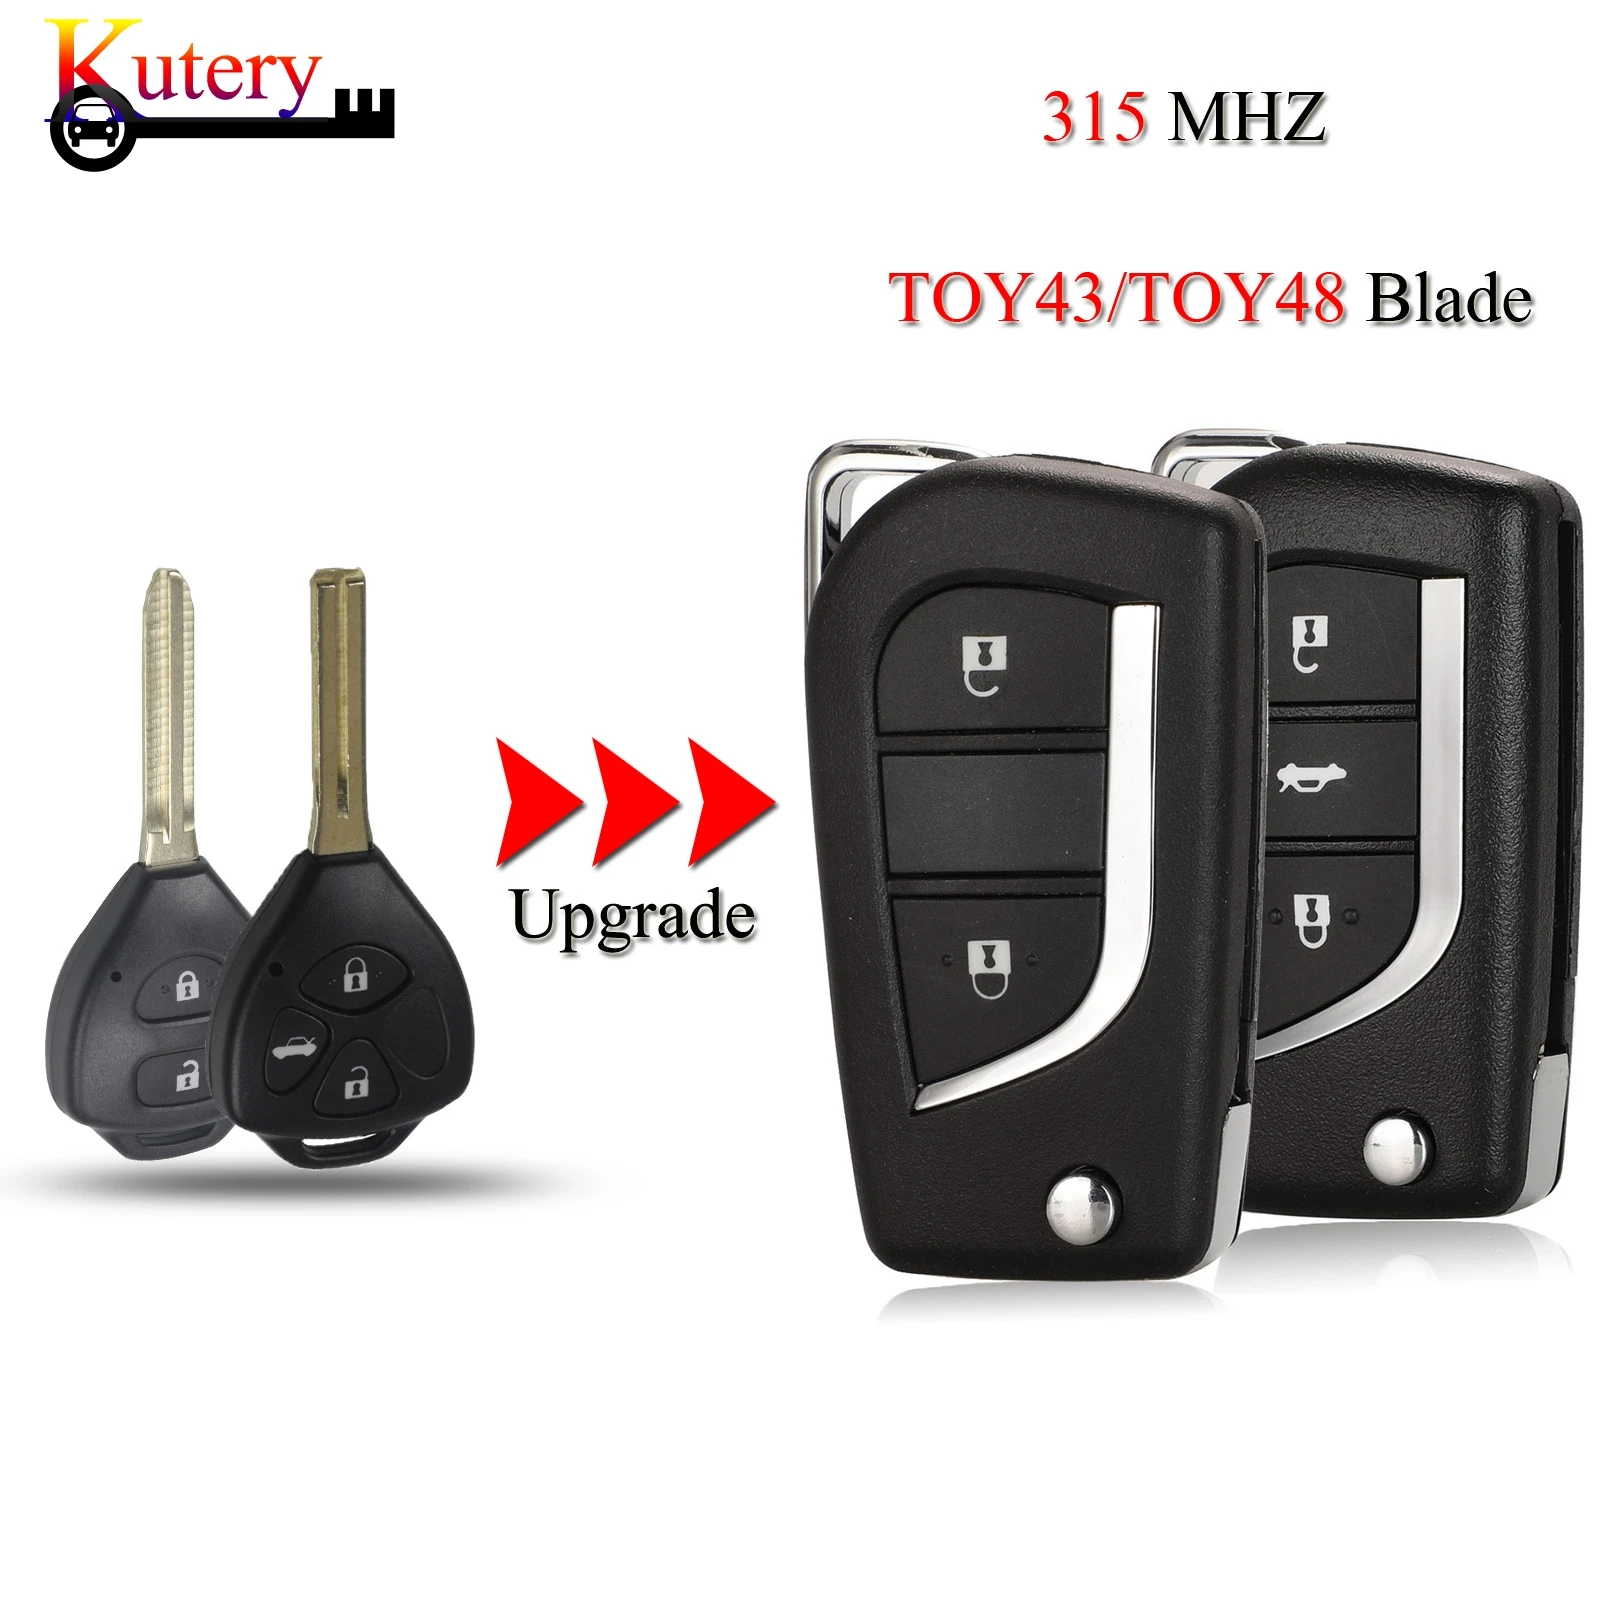 

Jingyuqin модифицированный складной дистанционный Автомобильный ключ для Toyota Corolla RAV4 Camry CROWN Reiz 2/3 кнопки 315 МГц с TOY43 TOY48 с чипом